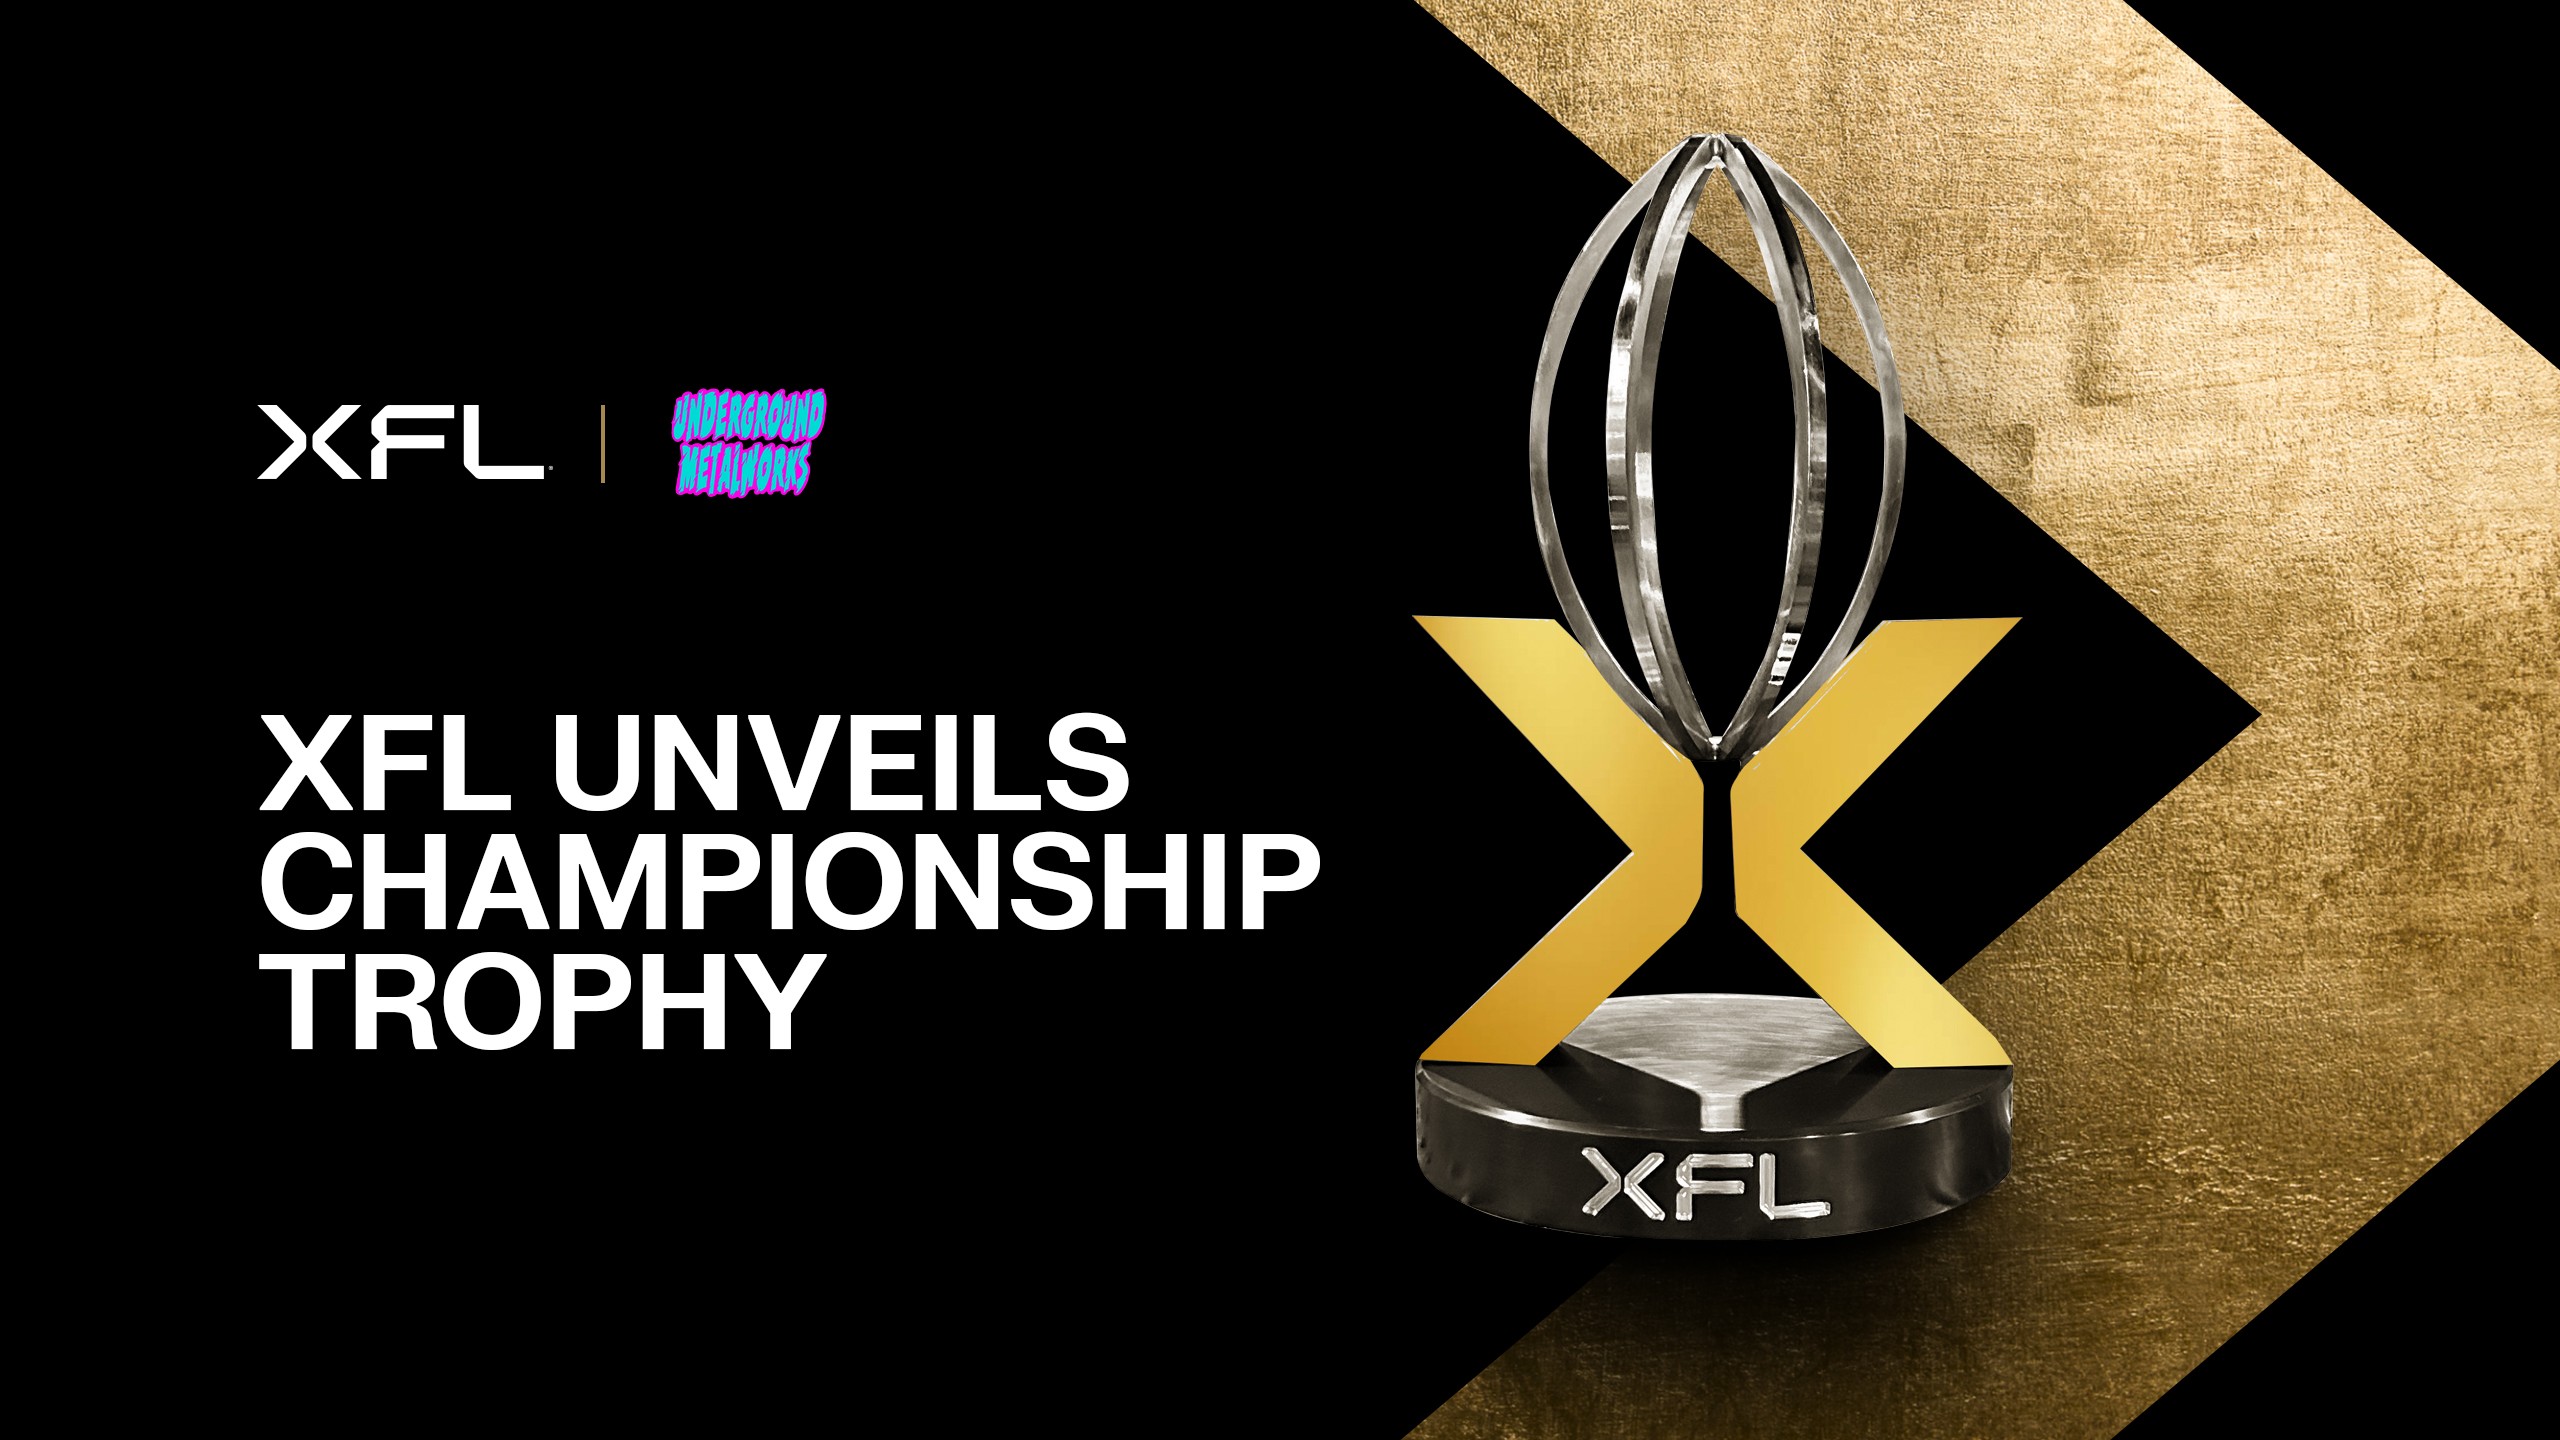 Championship-trophy-2560x1440.jpg